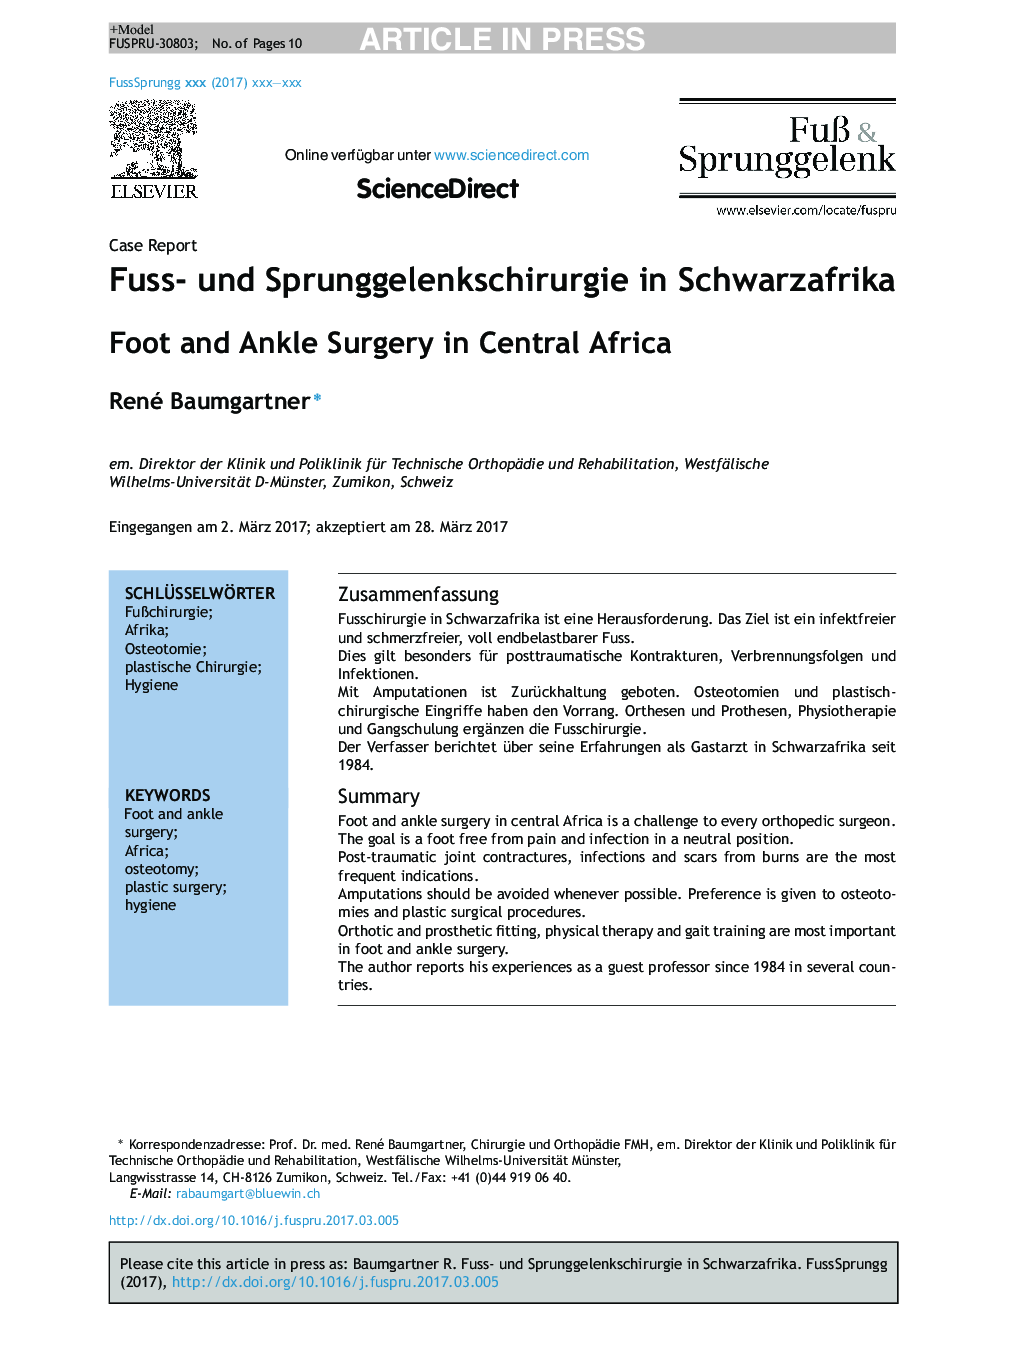 جراحی پا و مچ پا در جنوب صحرای آفریقا 